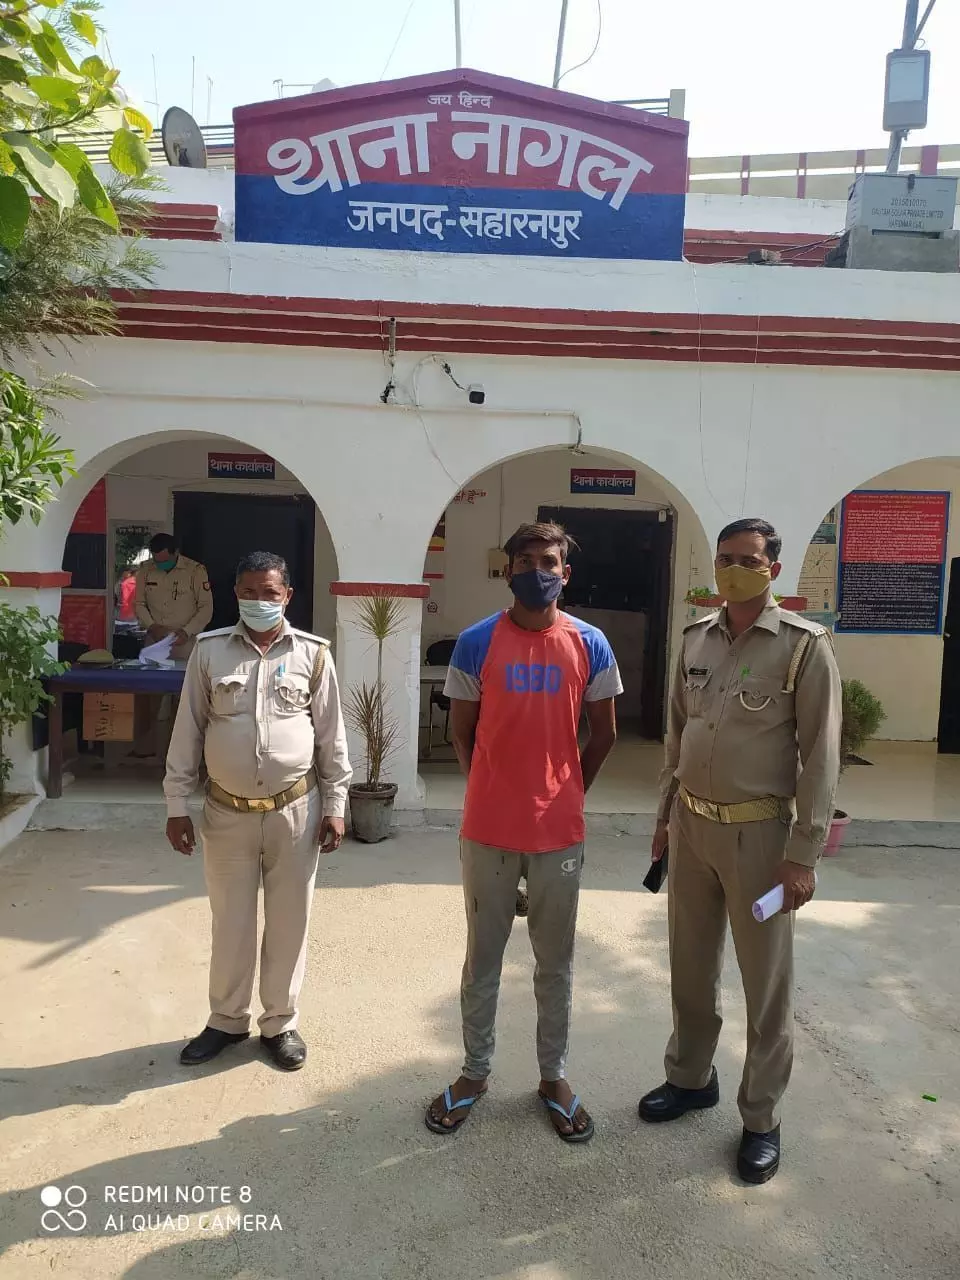 सहारनपुर पुलिस को मिली बड़ी कामयाबी, दबिश के दौरान रेप का आरोपी चढ़ा पुलिस के हत्थे